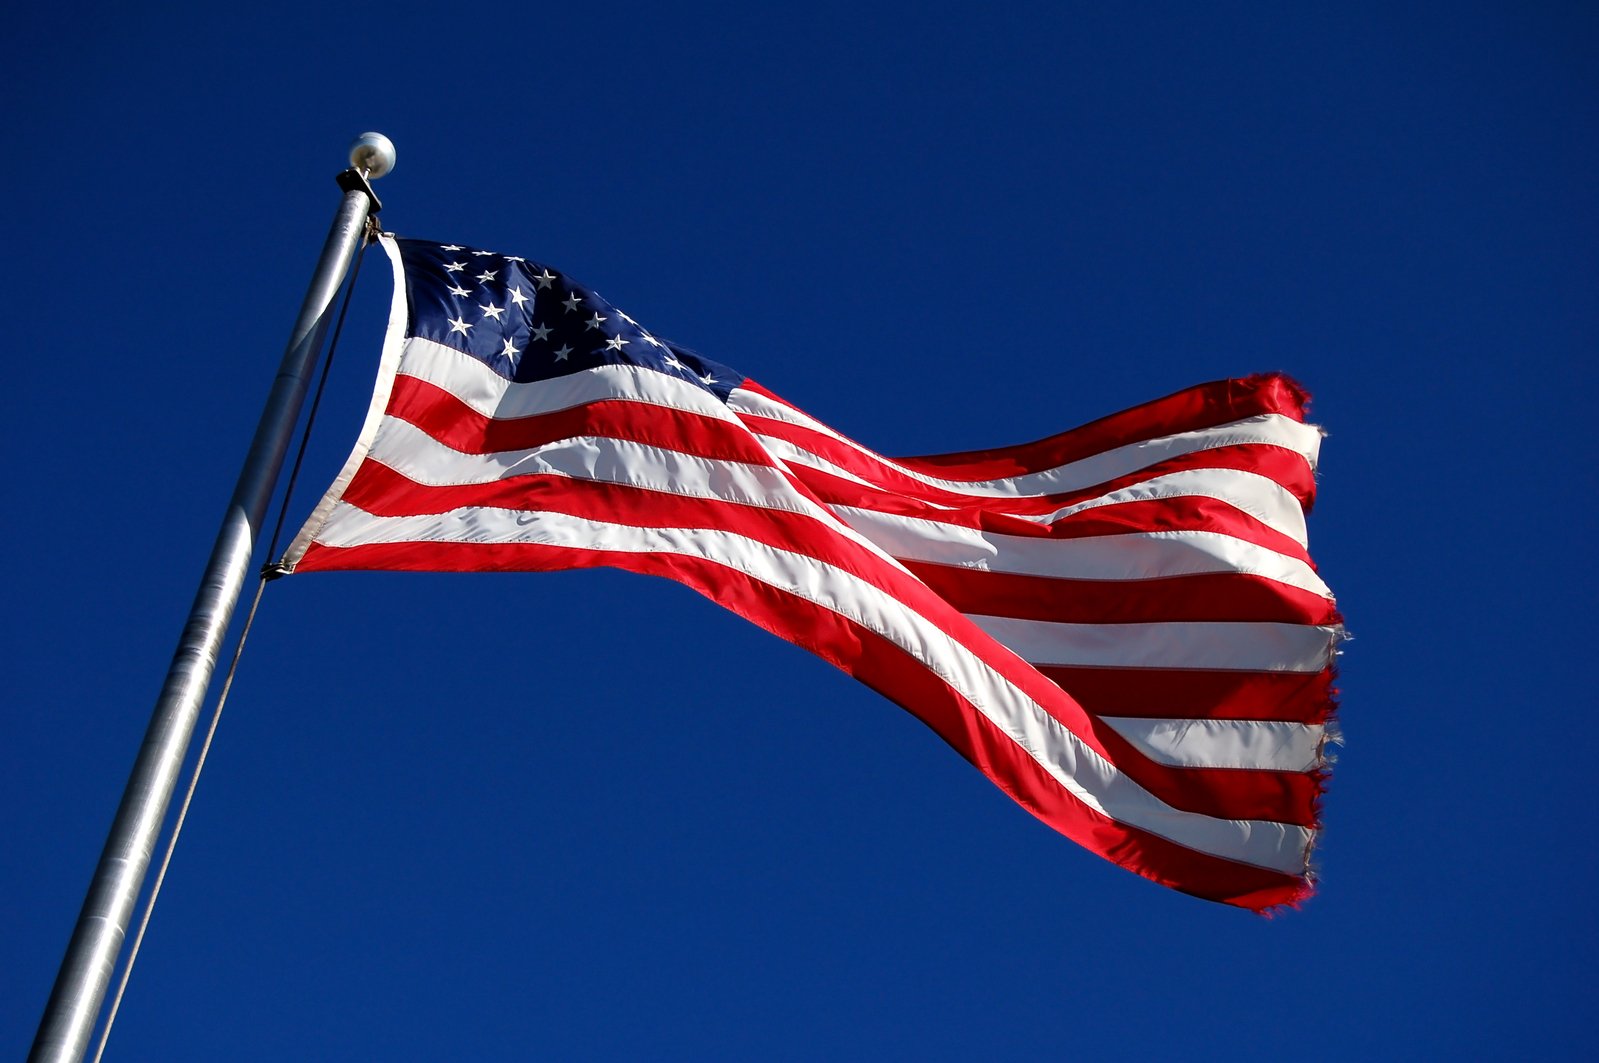 an american flag flies high in the air